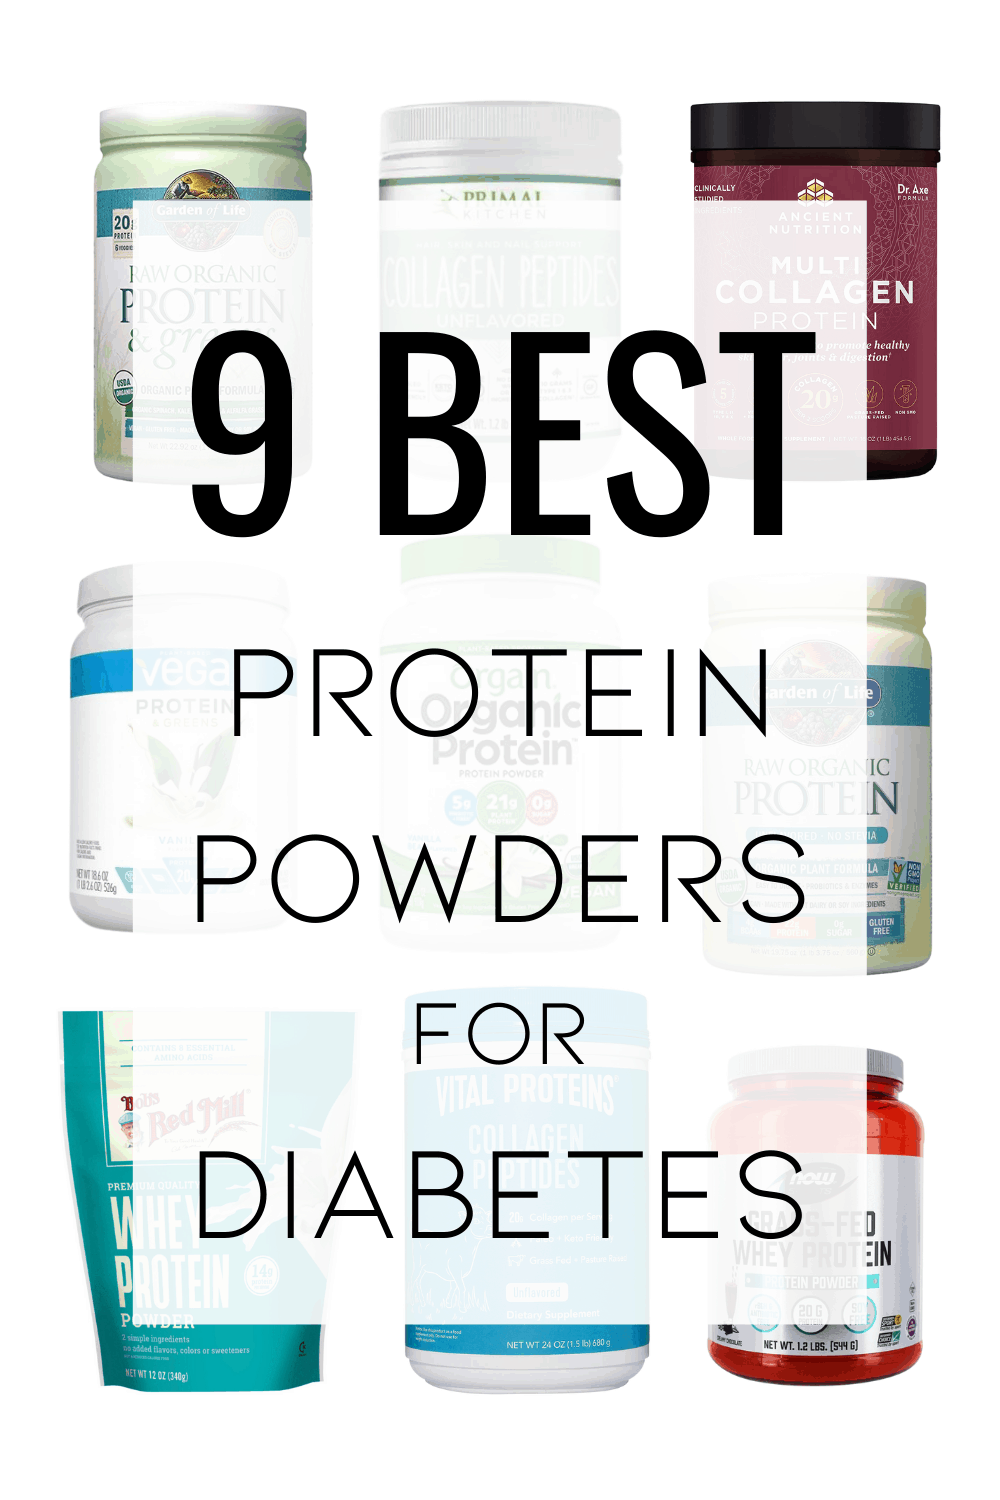 trustworthy protein powder brands